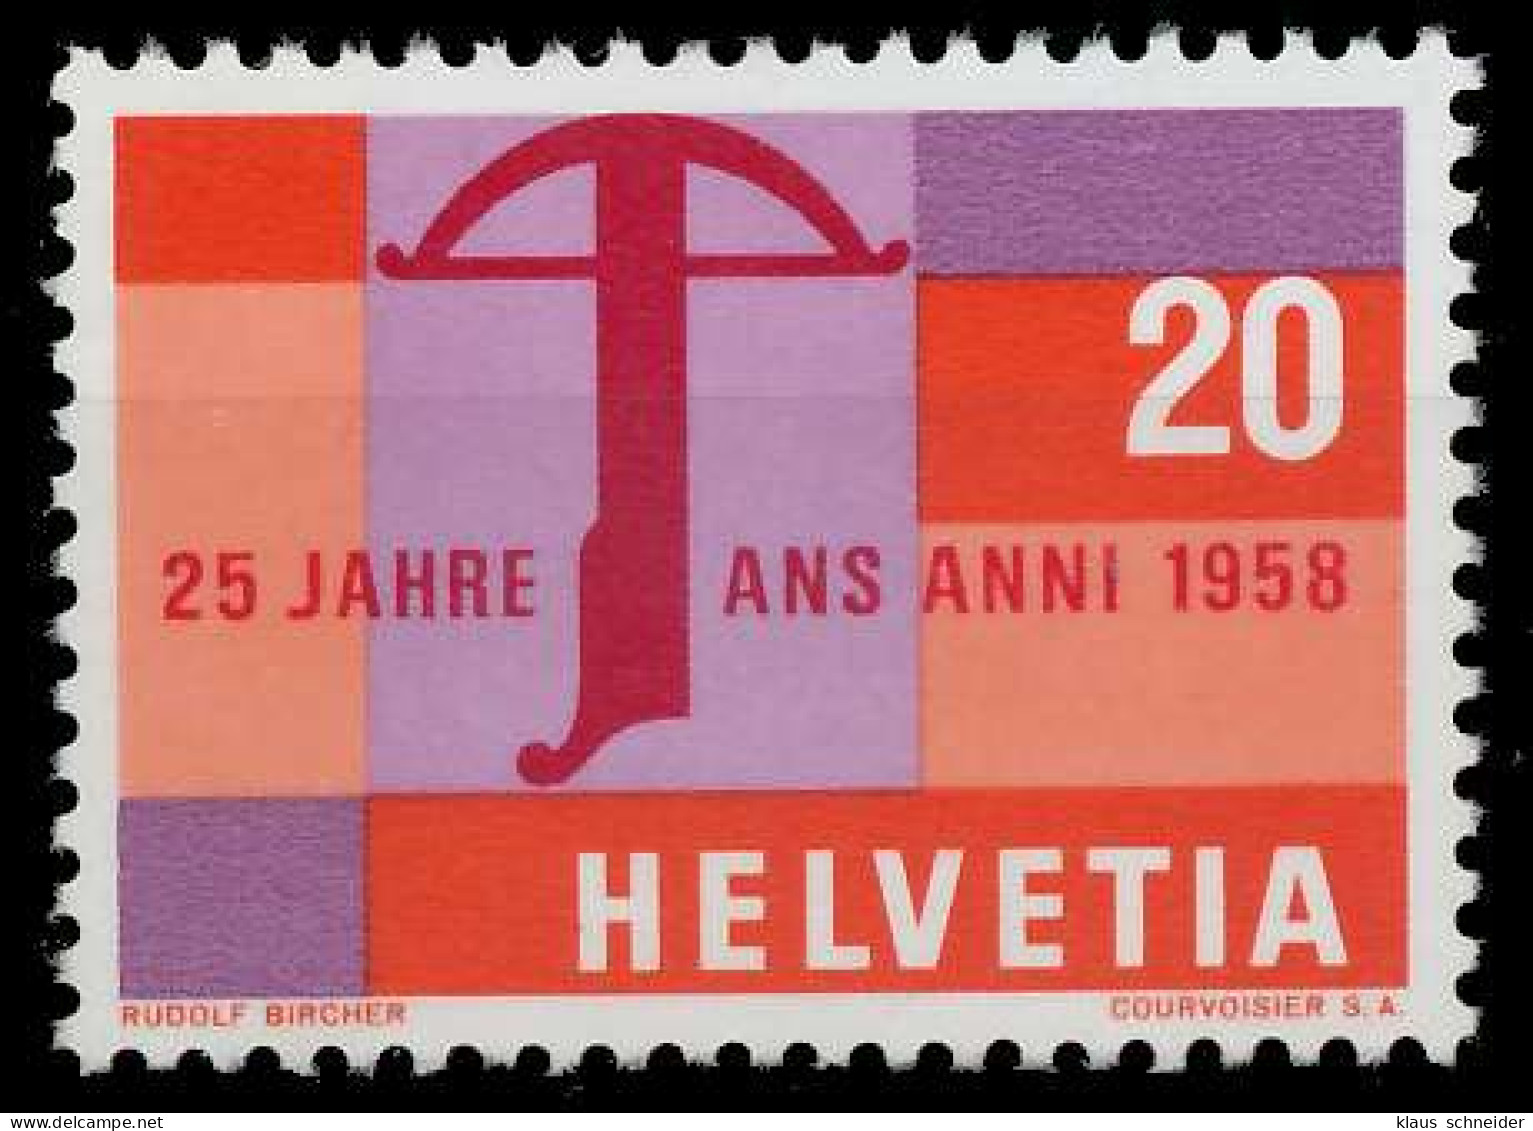 SCHWEIZ 1958 Nr 655 Postfrisch X679272 - Ungebraucht